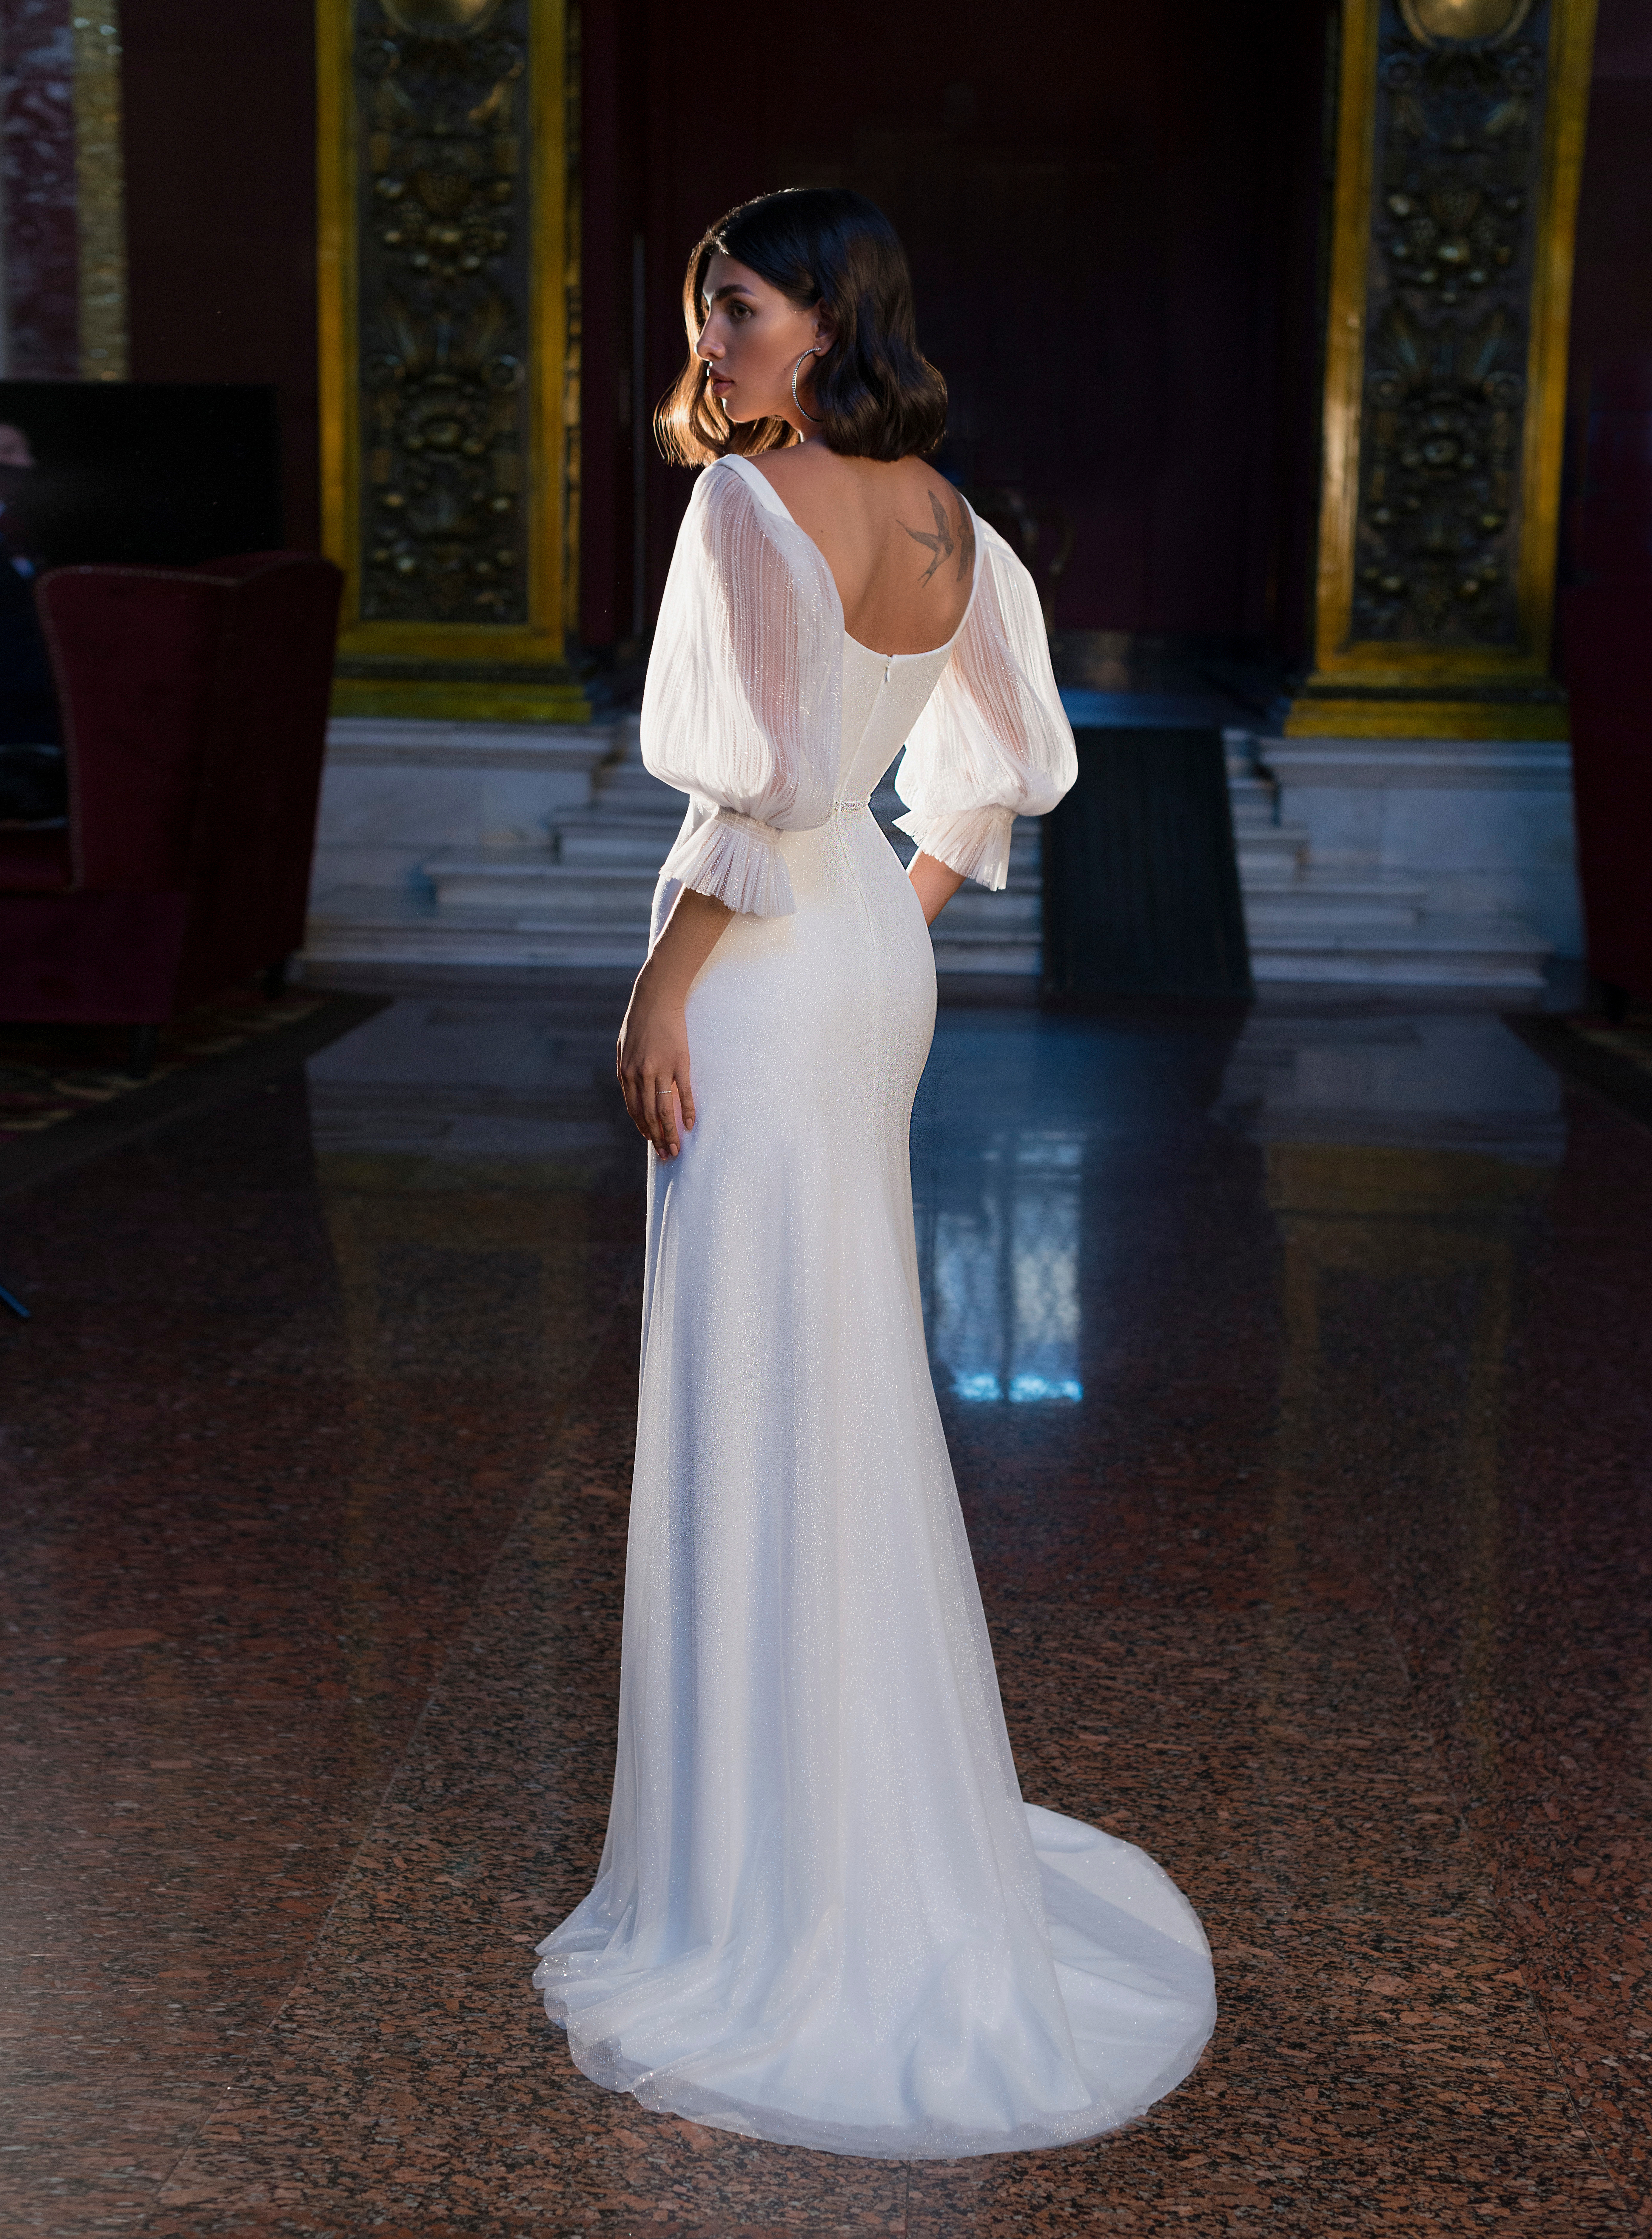 Купить свадебное платье «Ила» Мэрри Марк из коллекции Бриллиант 2022 года в салоне «Мэри Трюфель»